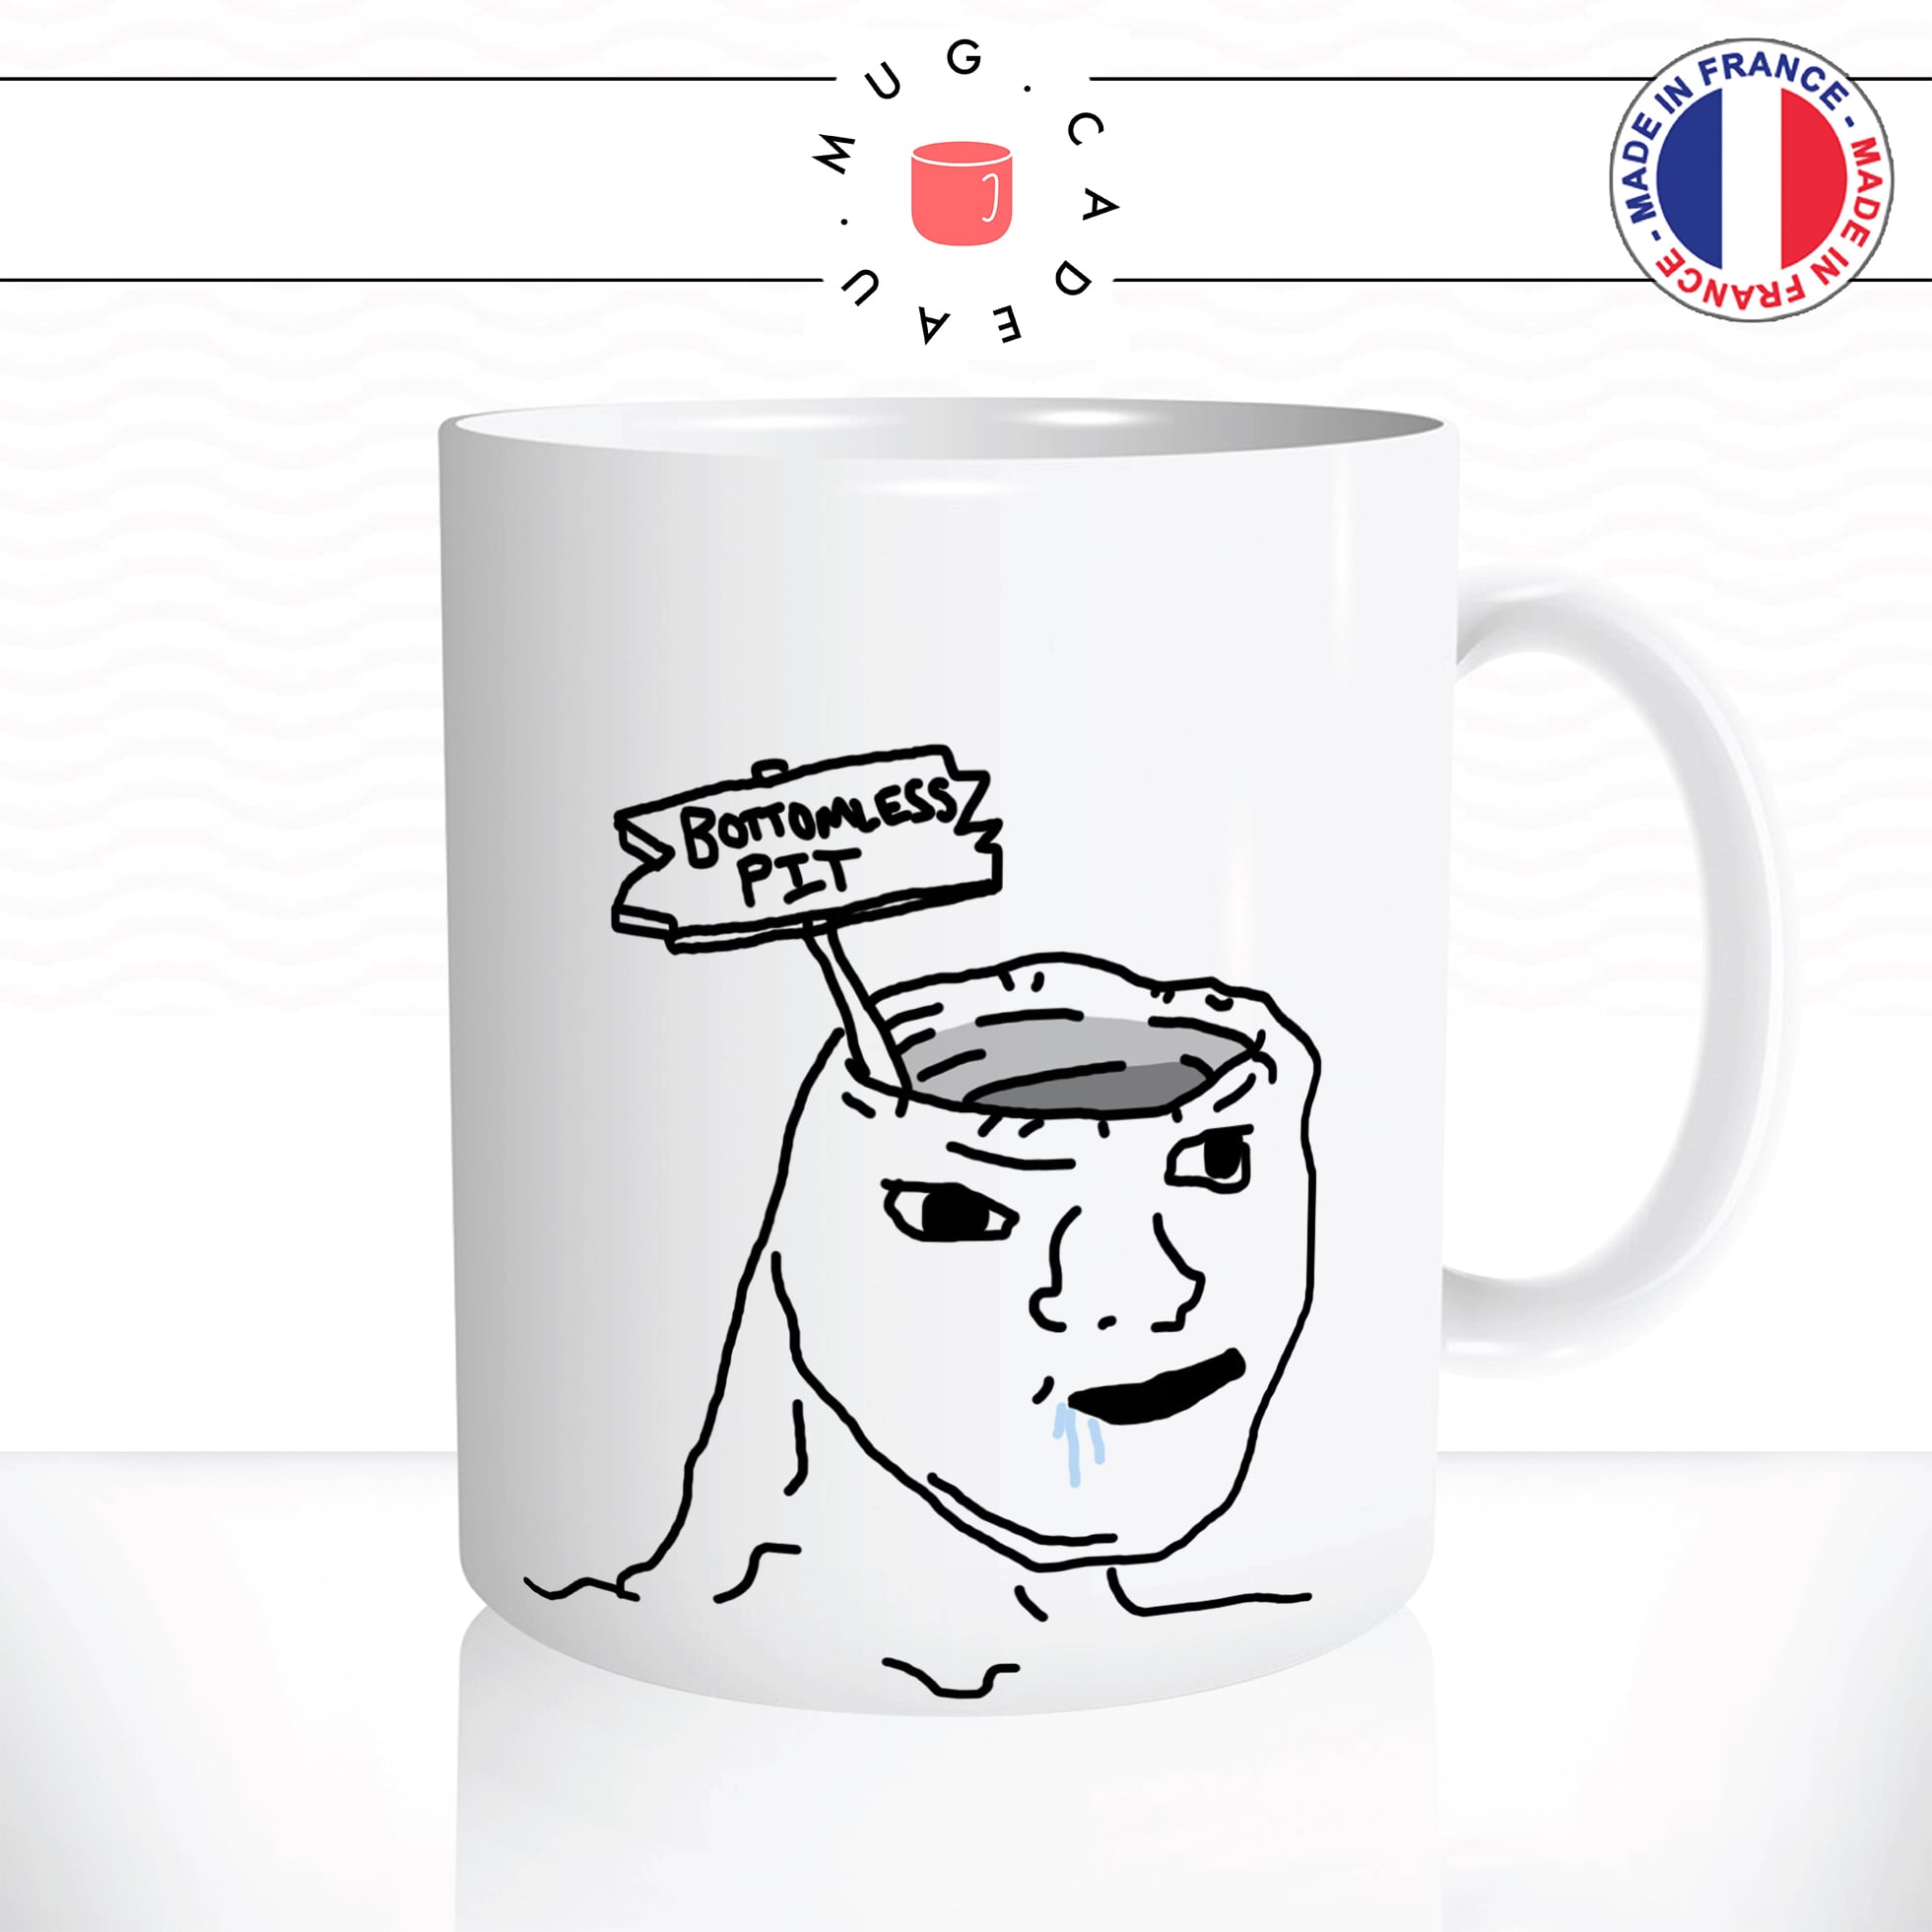 mug-tasse-bottomless-pit-meme-internet-geek-drole-débile-bete-bave-dessin-moche-fun-café-thé-idée-cadeau-originale-personnalisée2-min